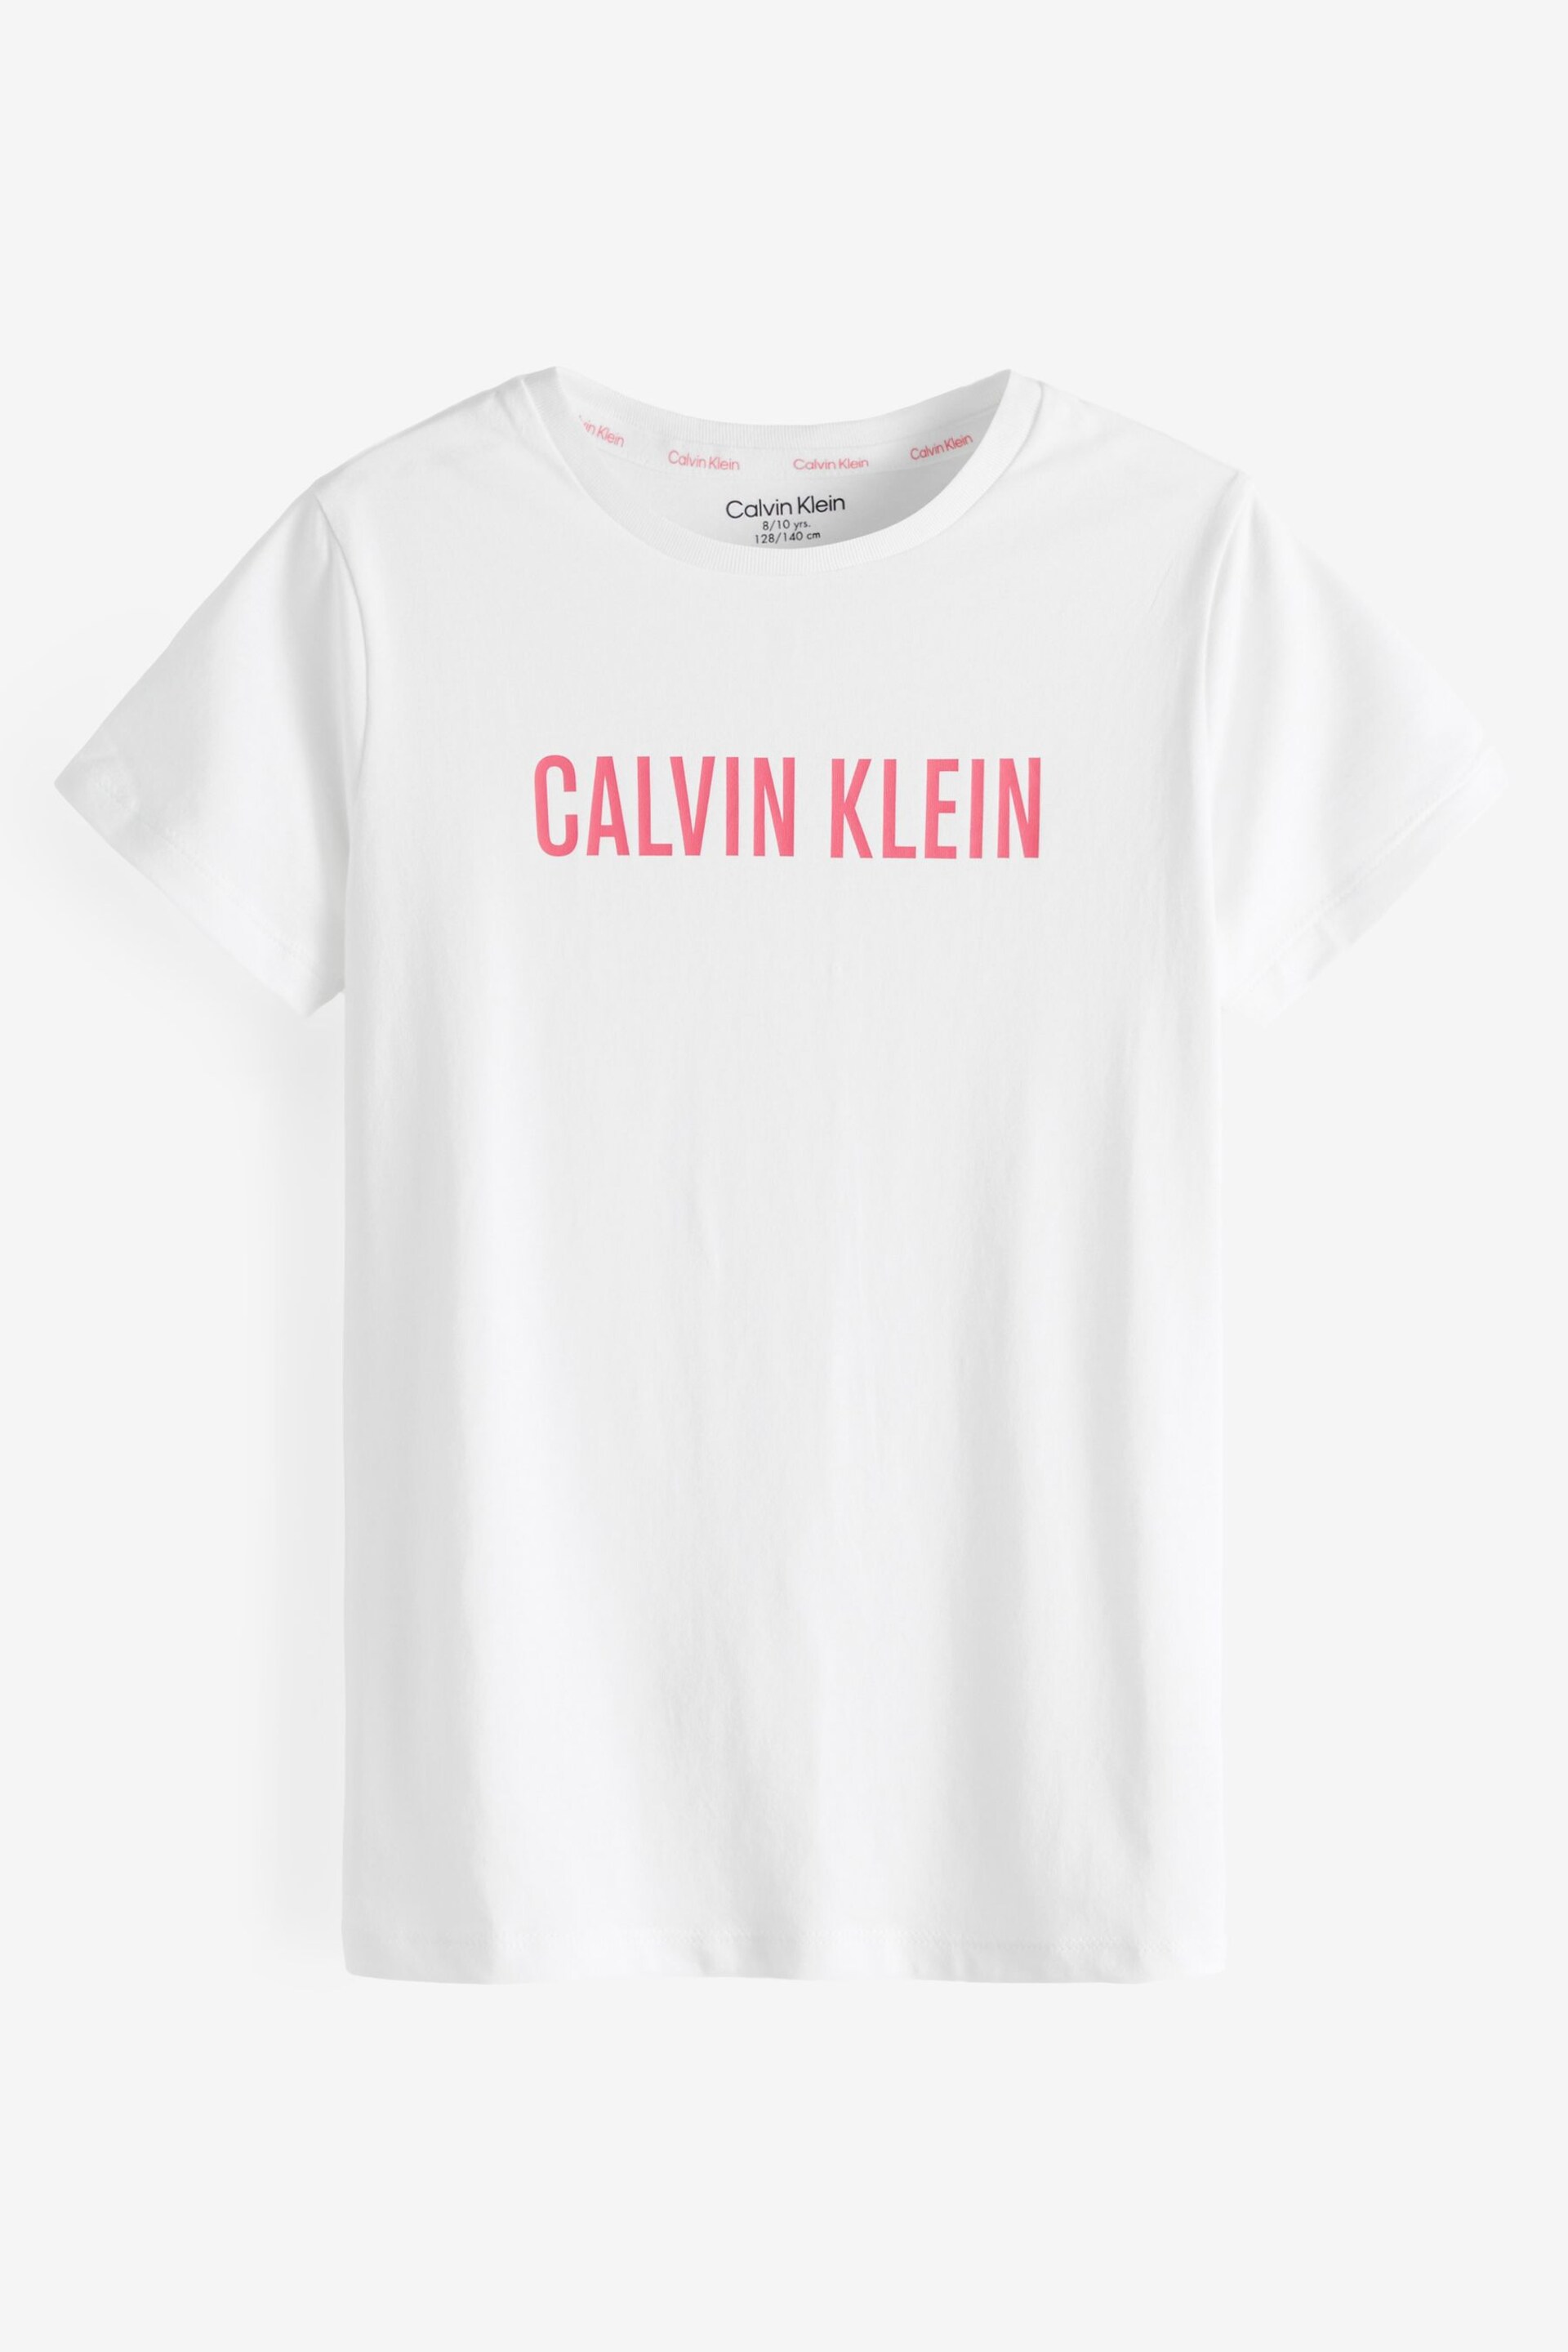 Calvin Klein Pink Slogan T-Shirts 2 Pack - Image 3 of 3